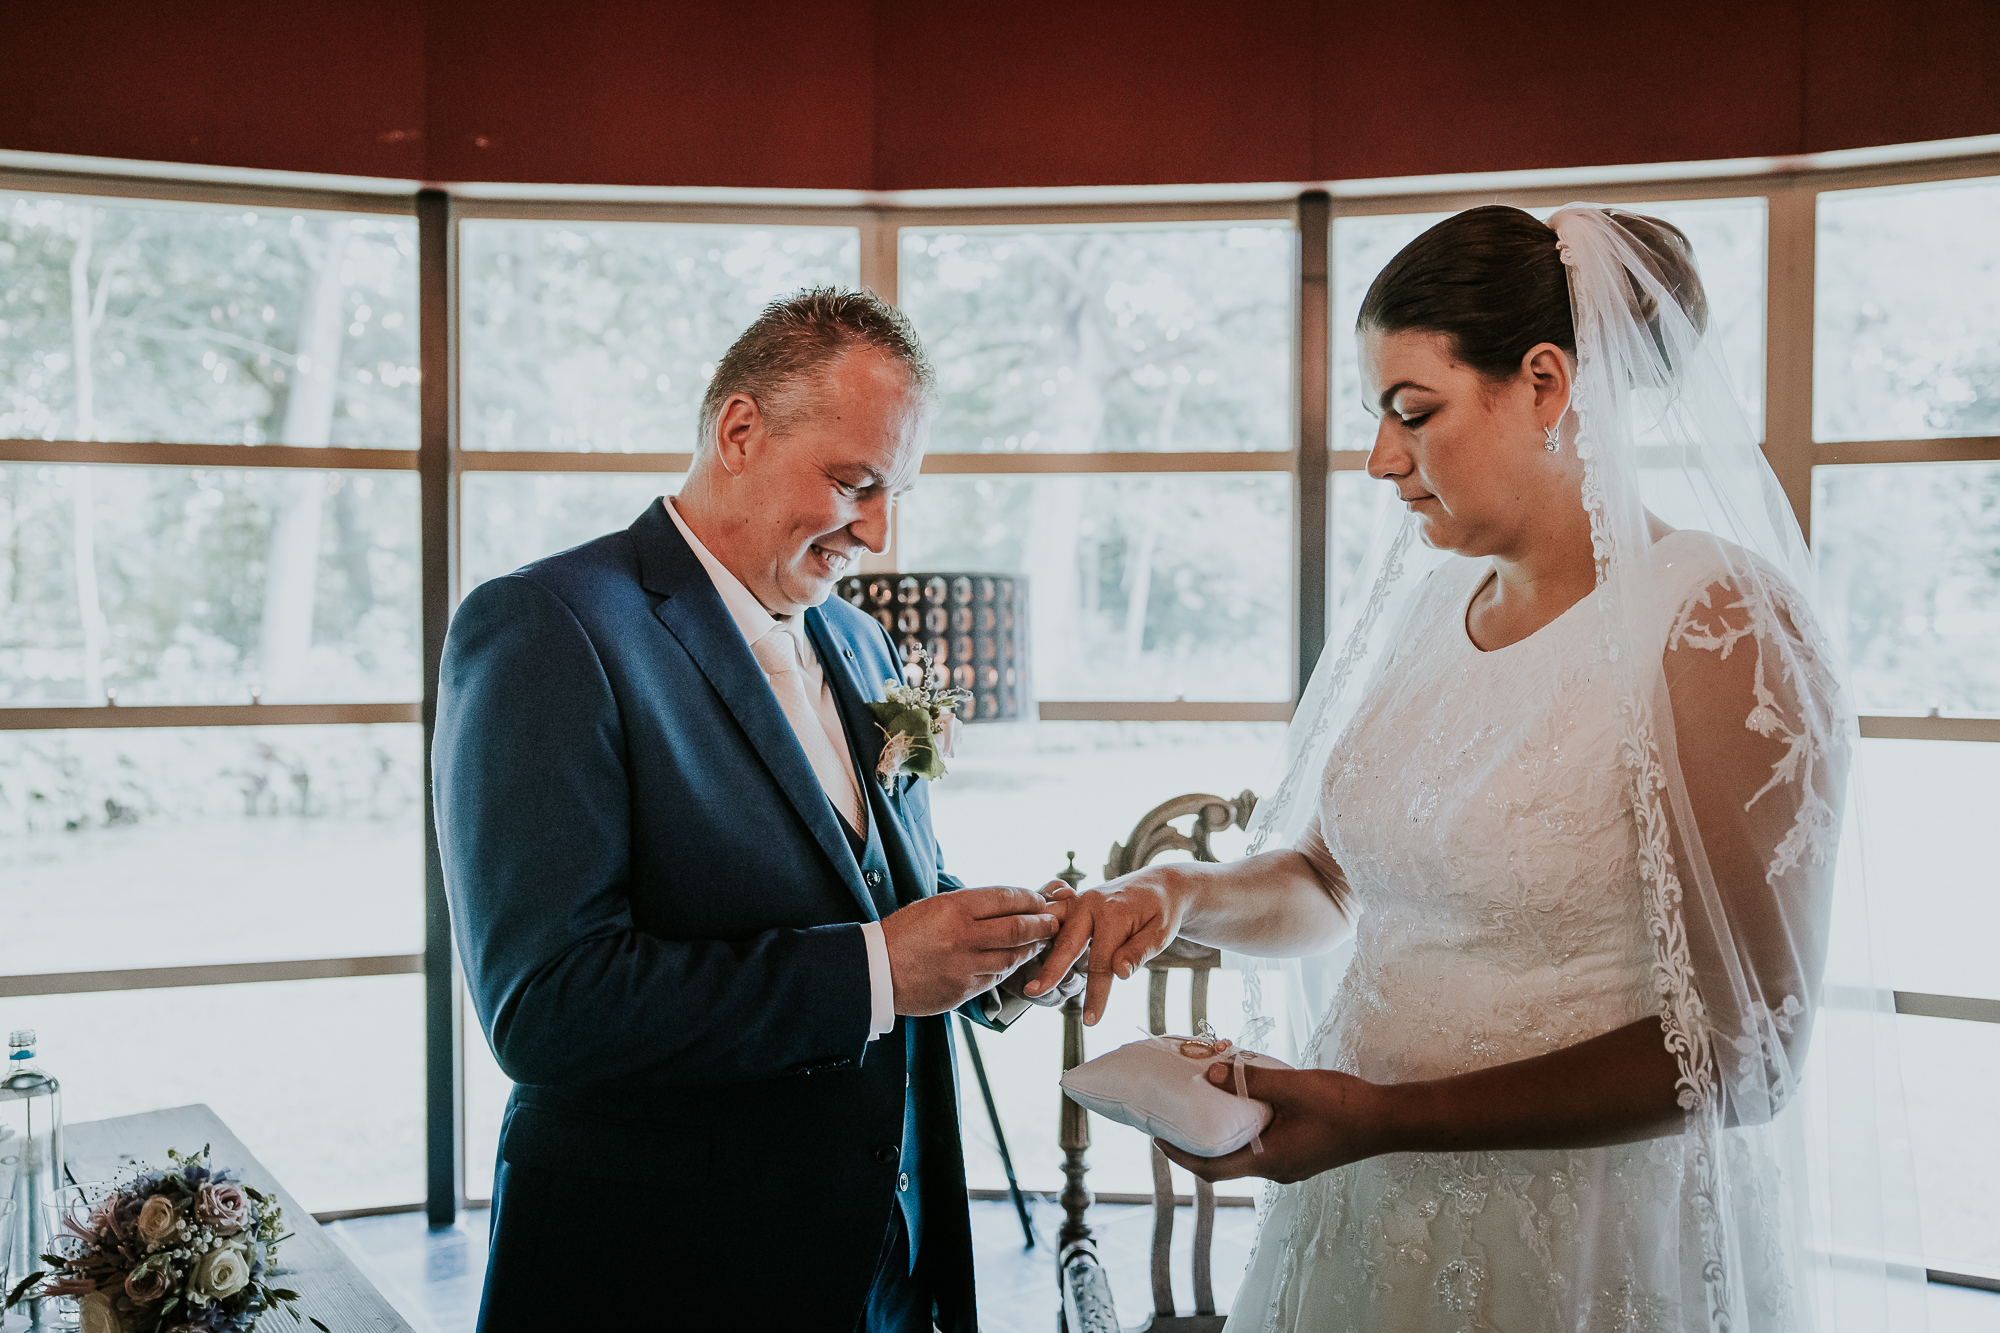 Het uitwisselen van de trouwringen. De bruidegom geeft zijn bruid de ring. Bruidsfotografie door bruidsfotograaf Nickie Fotografie uit Dokkum, Friesland.